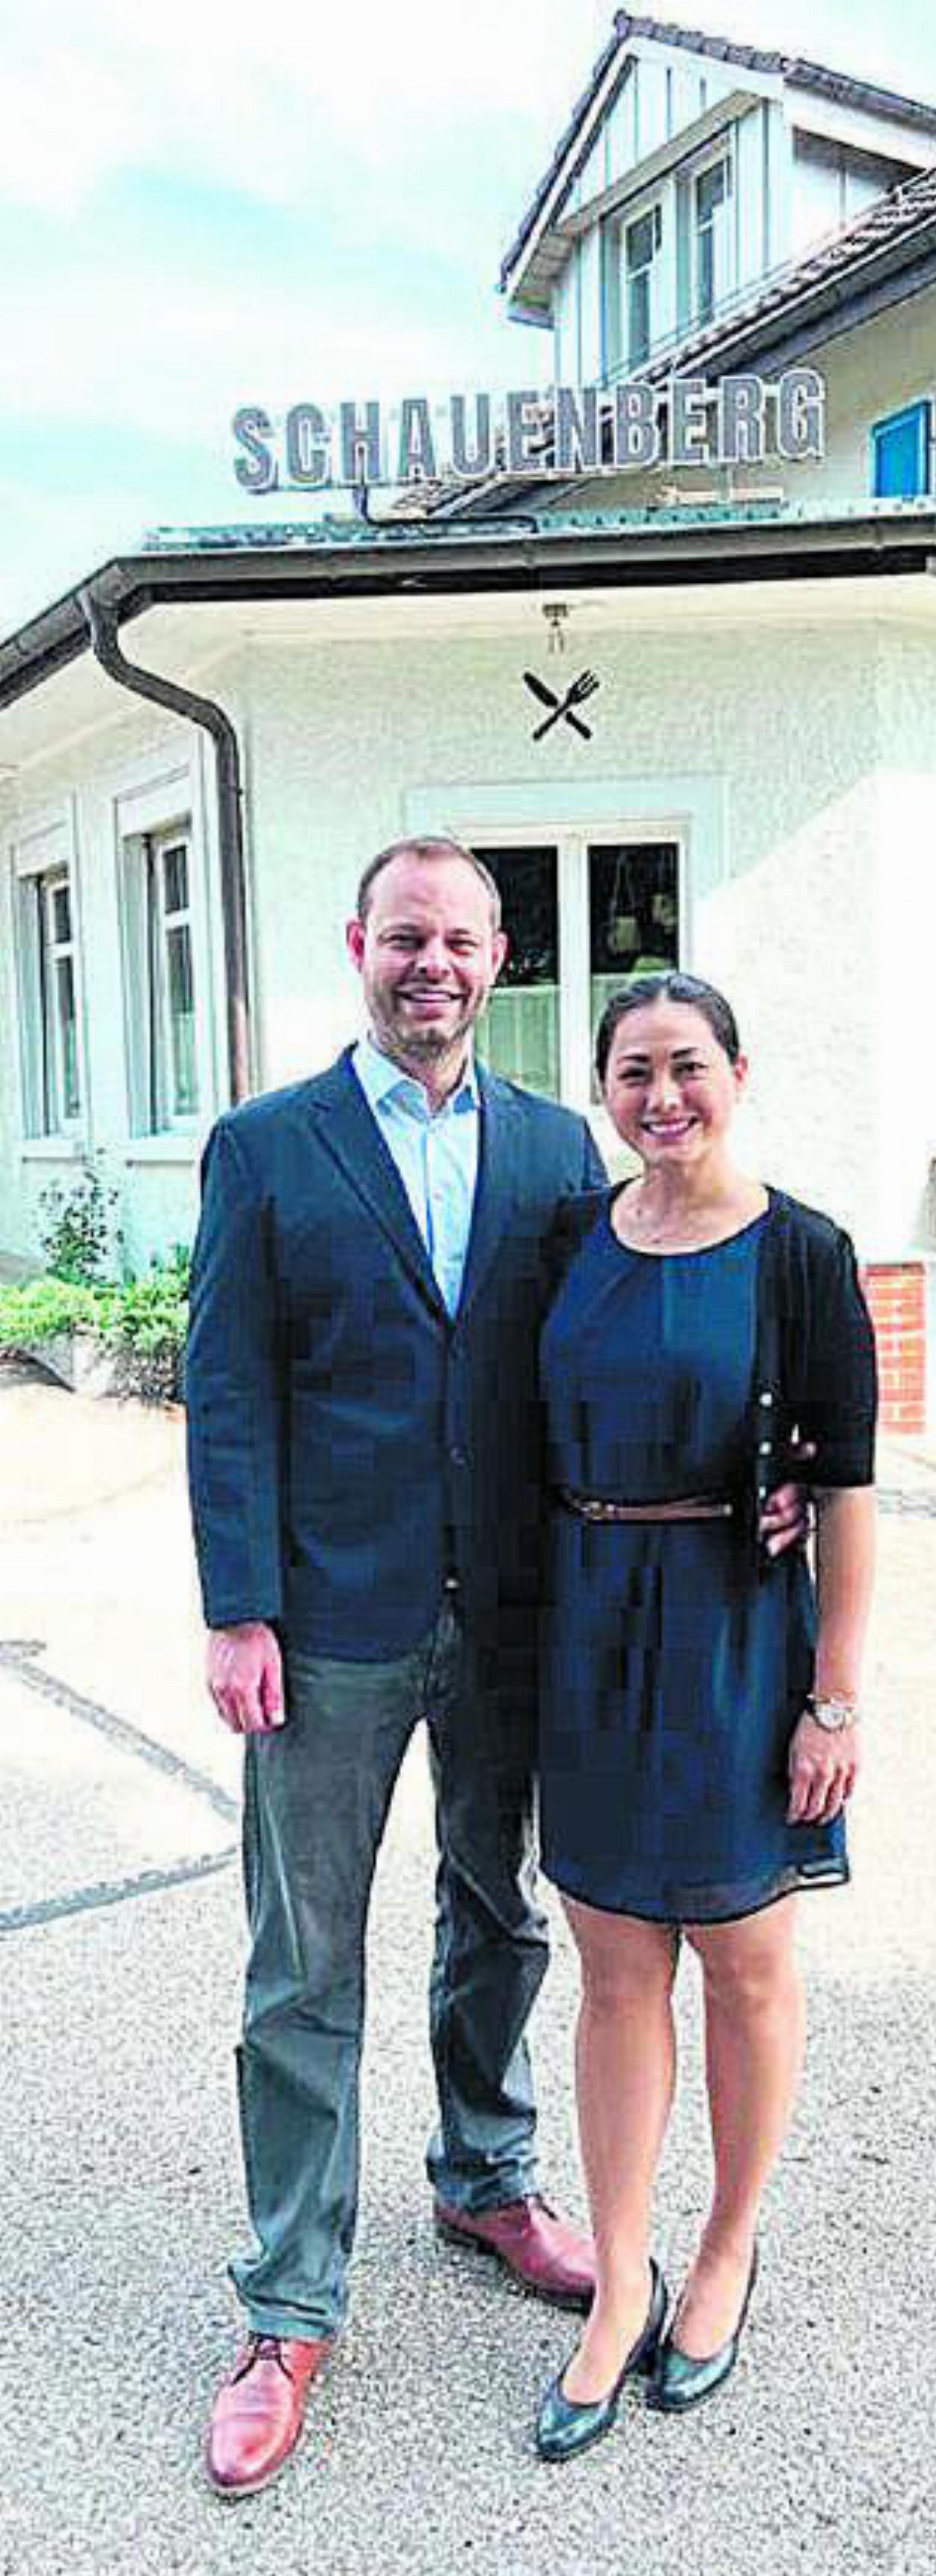 Diana und Simon Daley, die neuen Besitzer und Betreiber des Restaurants Schauenberg. Bild: Peter Mesmer